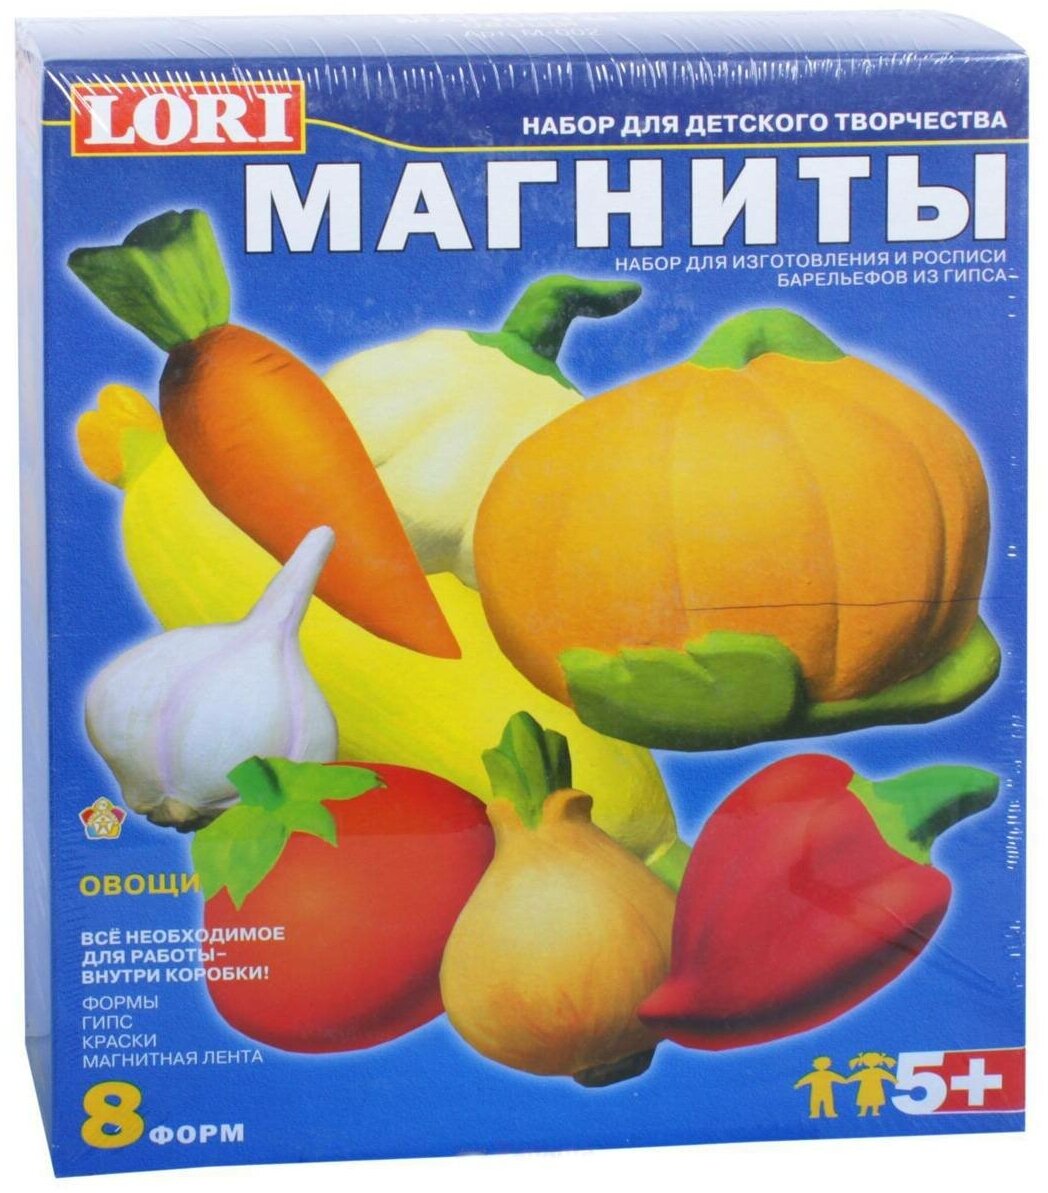 Фигурки на магнитах LORI "Овощи" (М002)